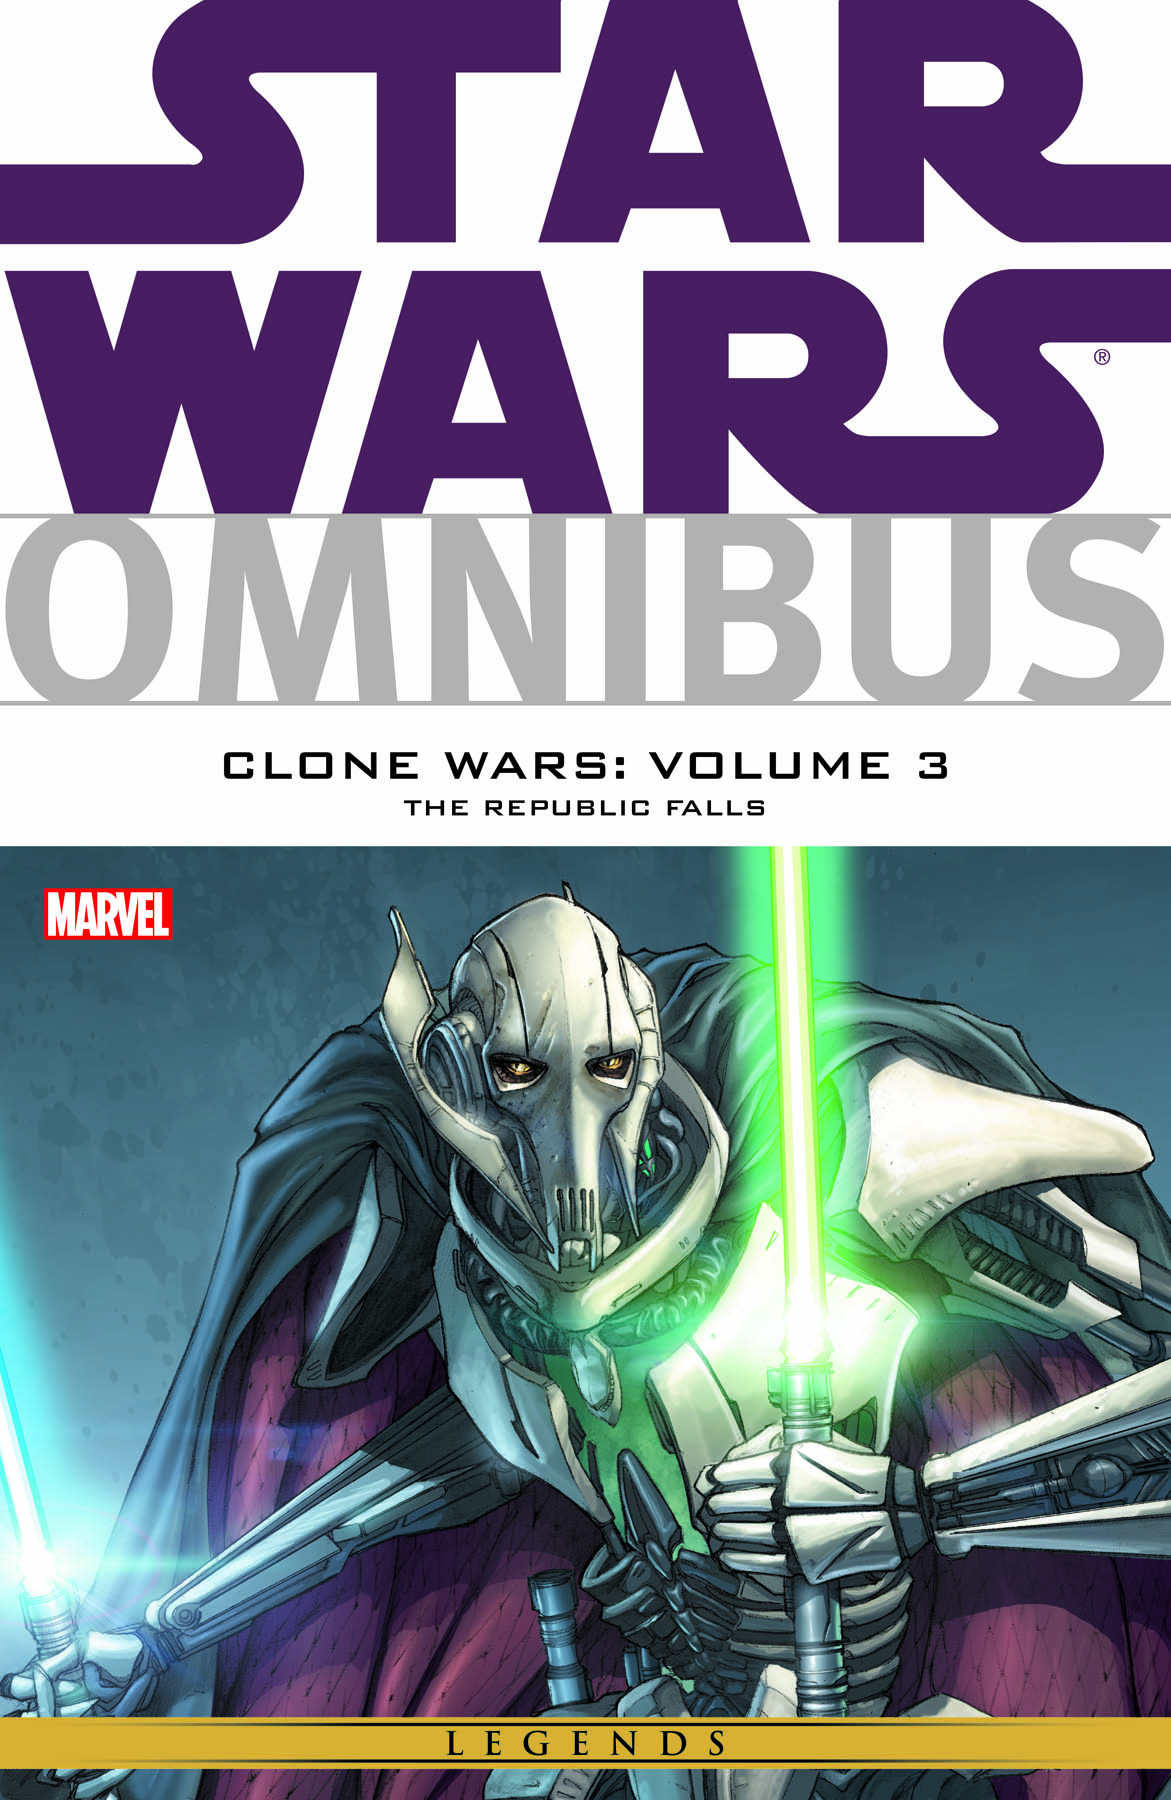 Star wars omnibus clone wars